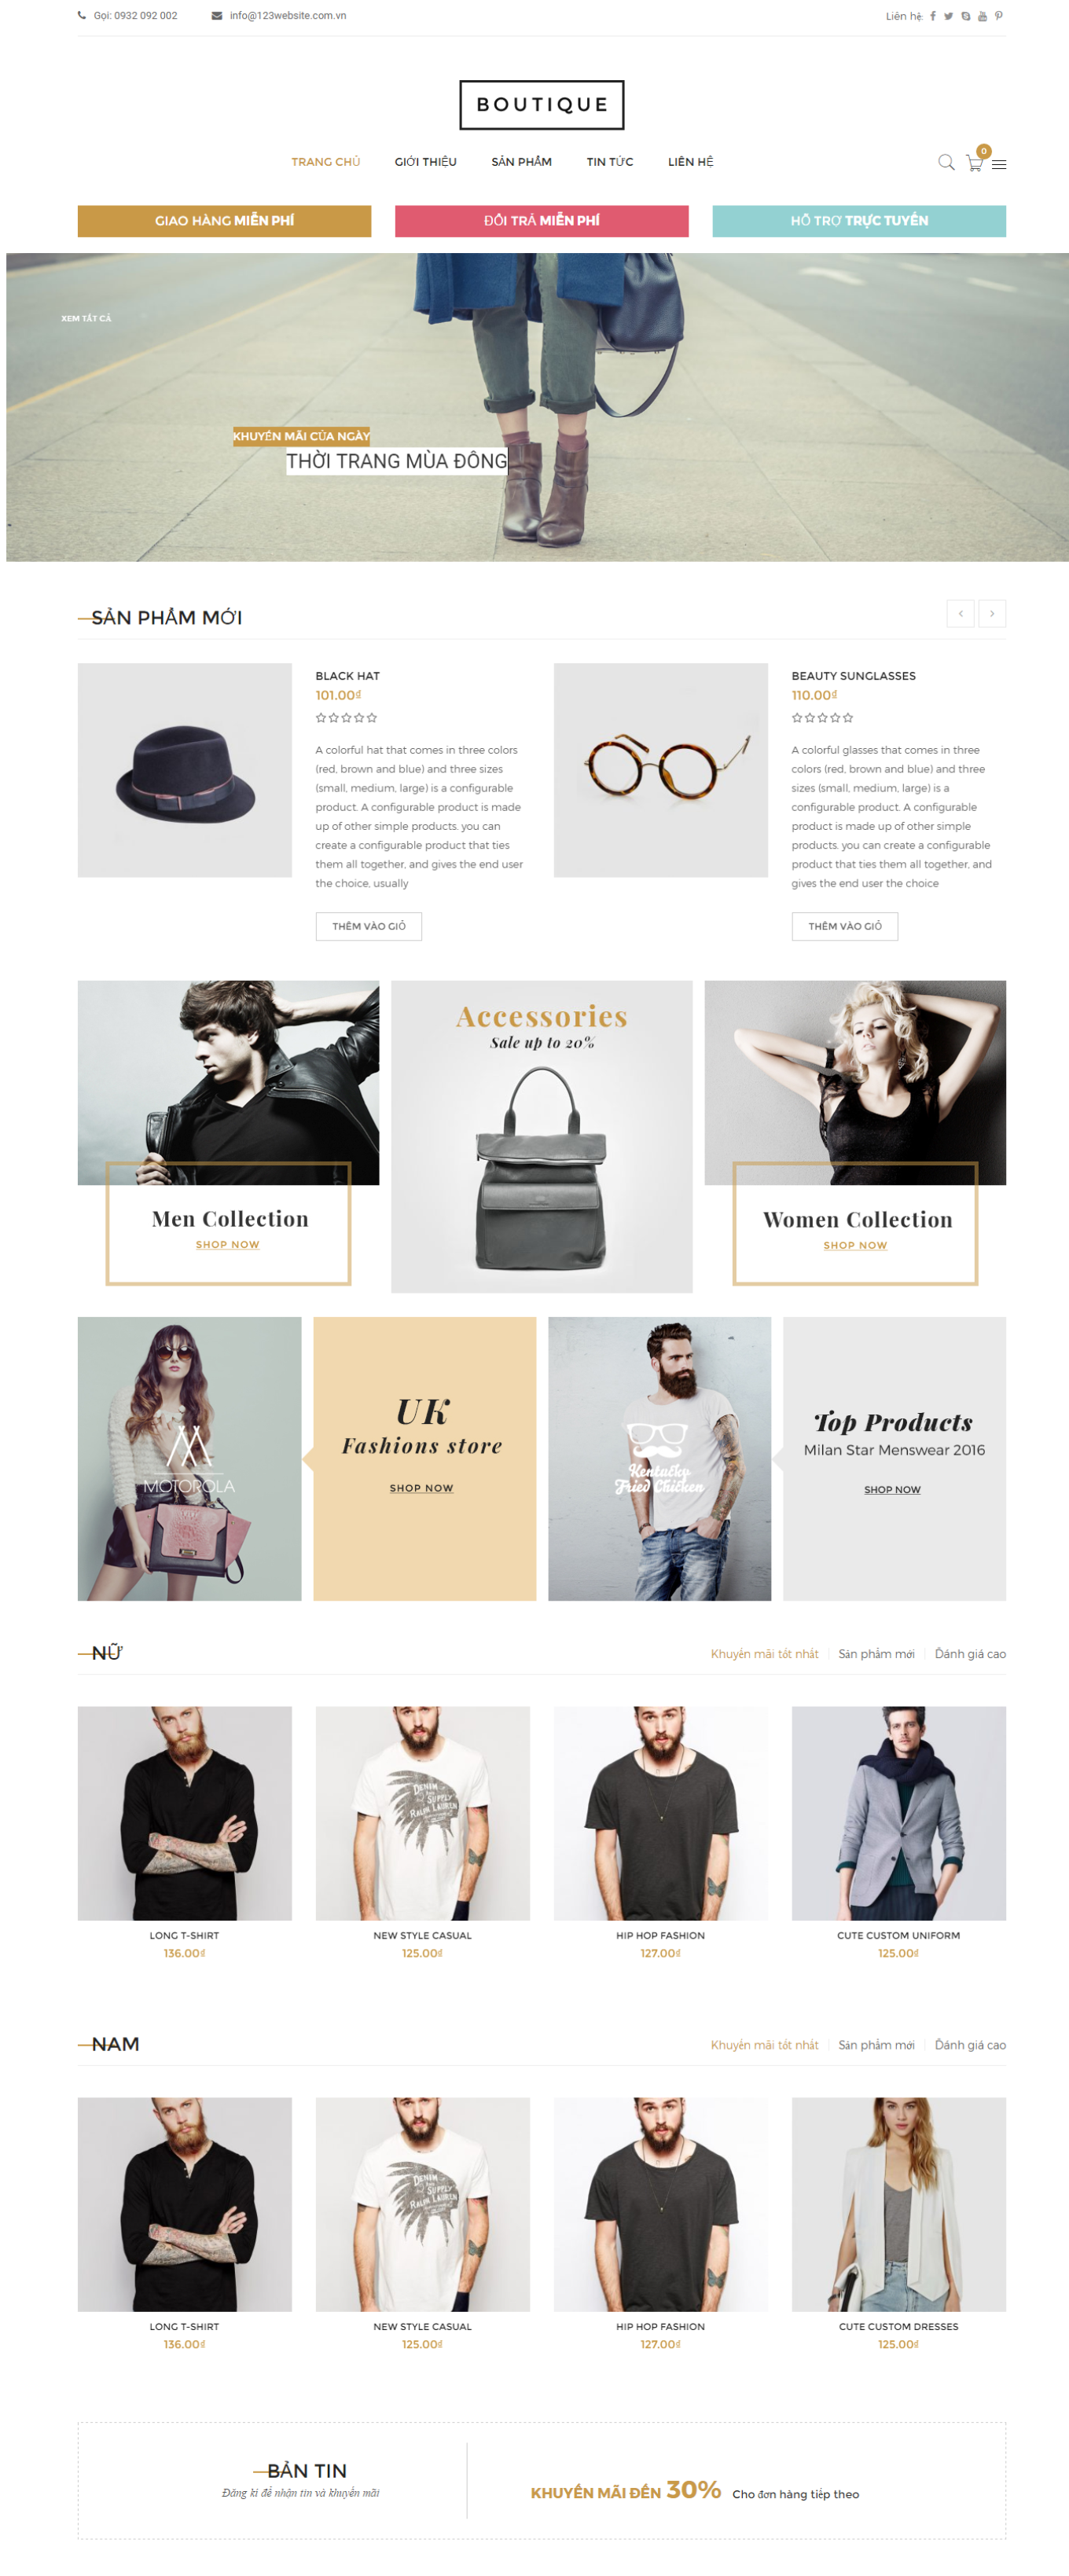 Mẫu website bán hàng thời trang - Boutique17